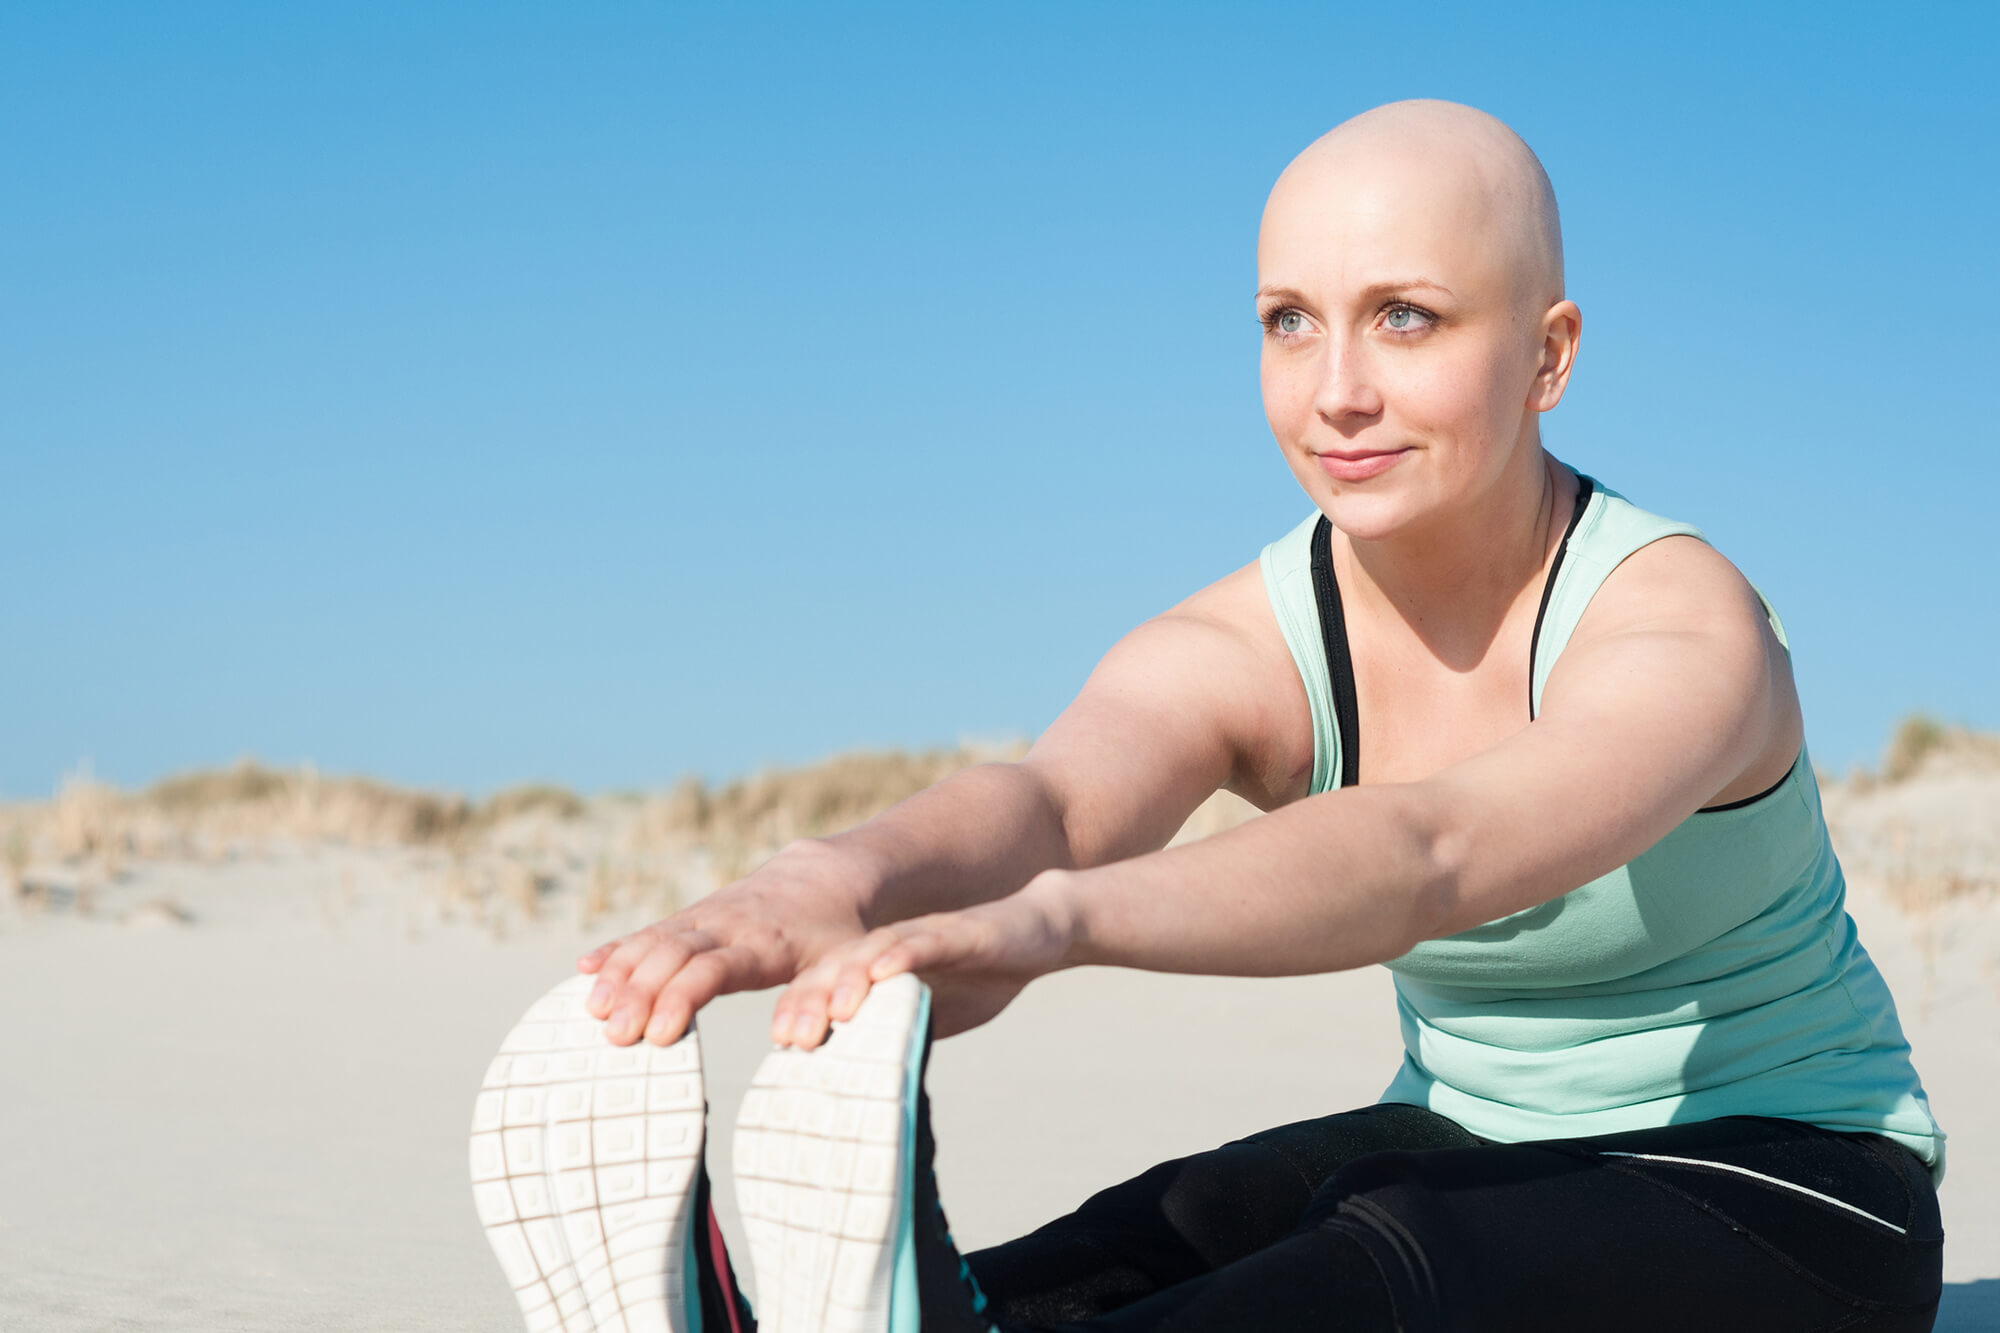 Μπορεί ο αθλητισμός να μειώσει τις πιθανότητες εμφάνισης καρκίνου;